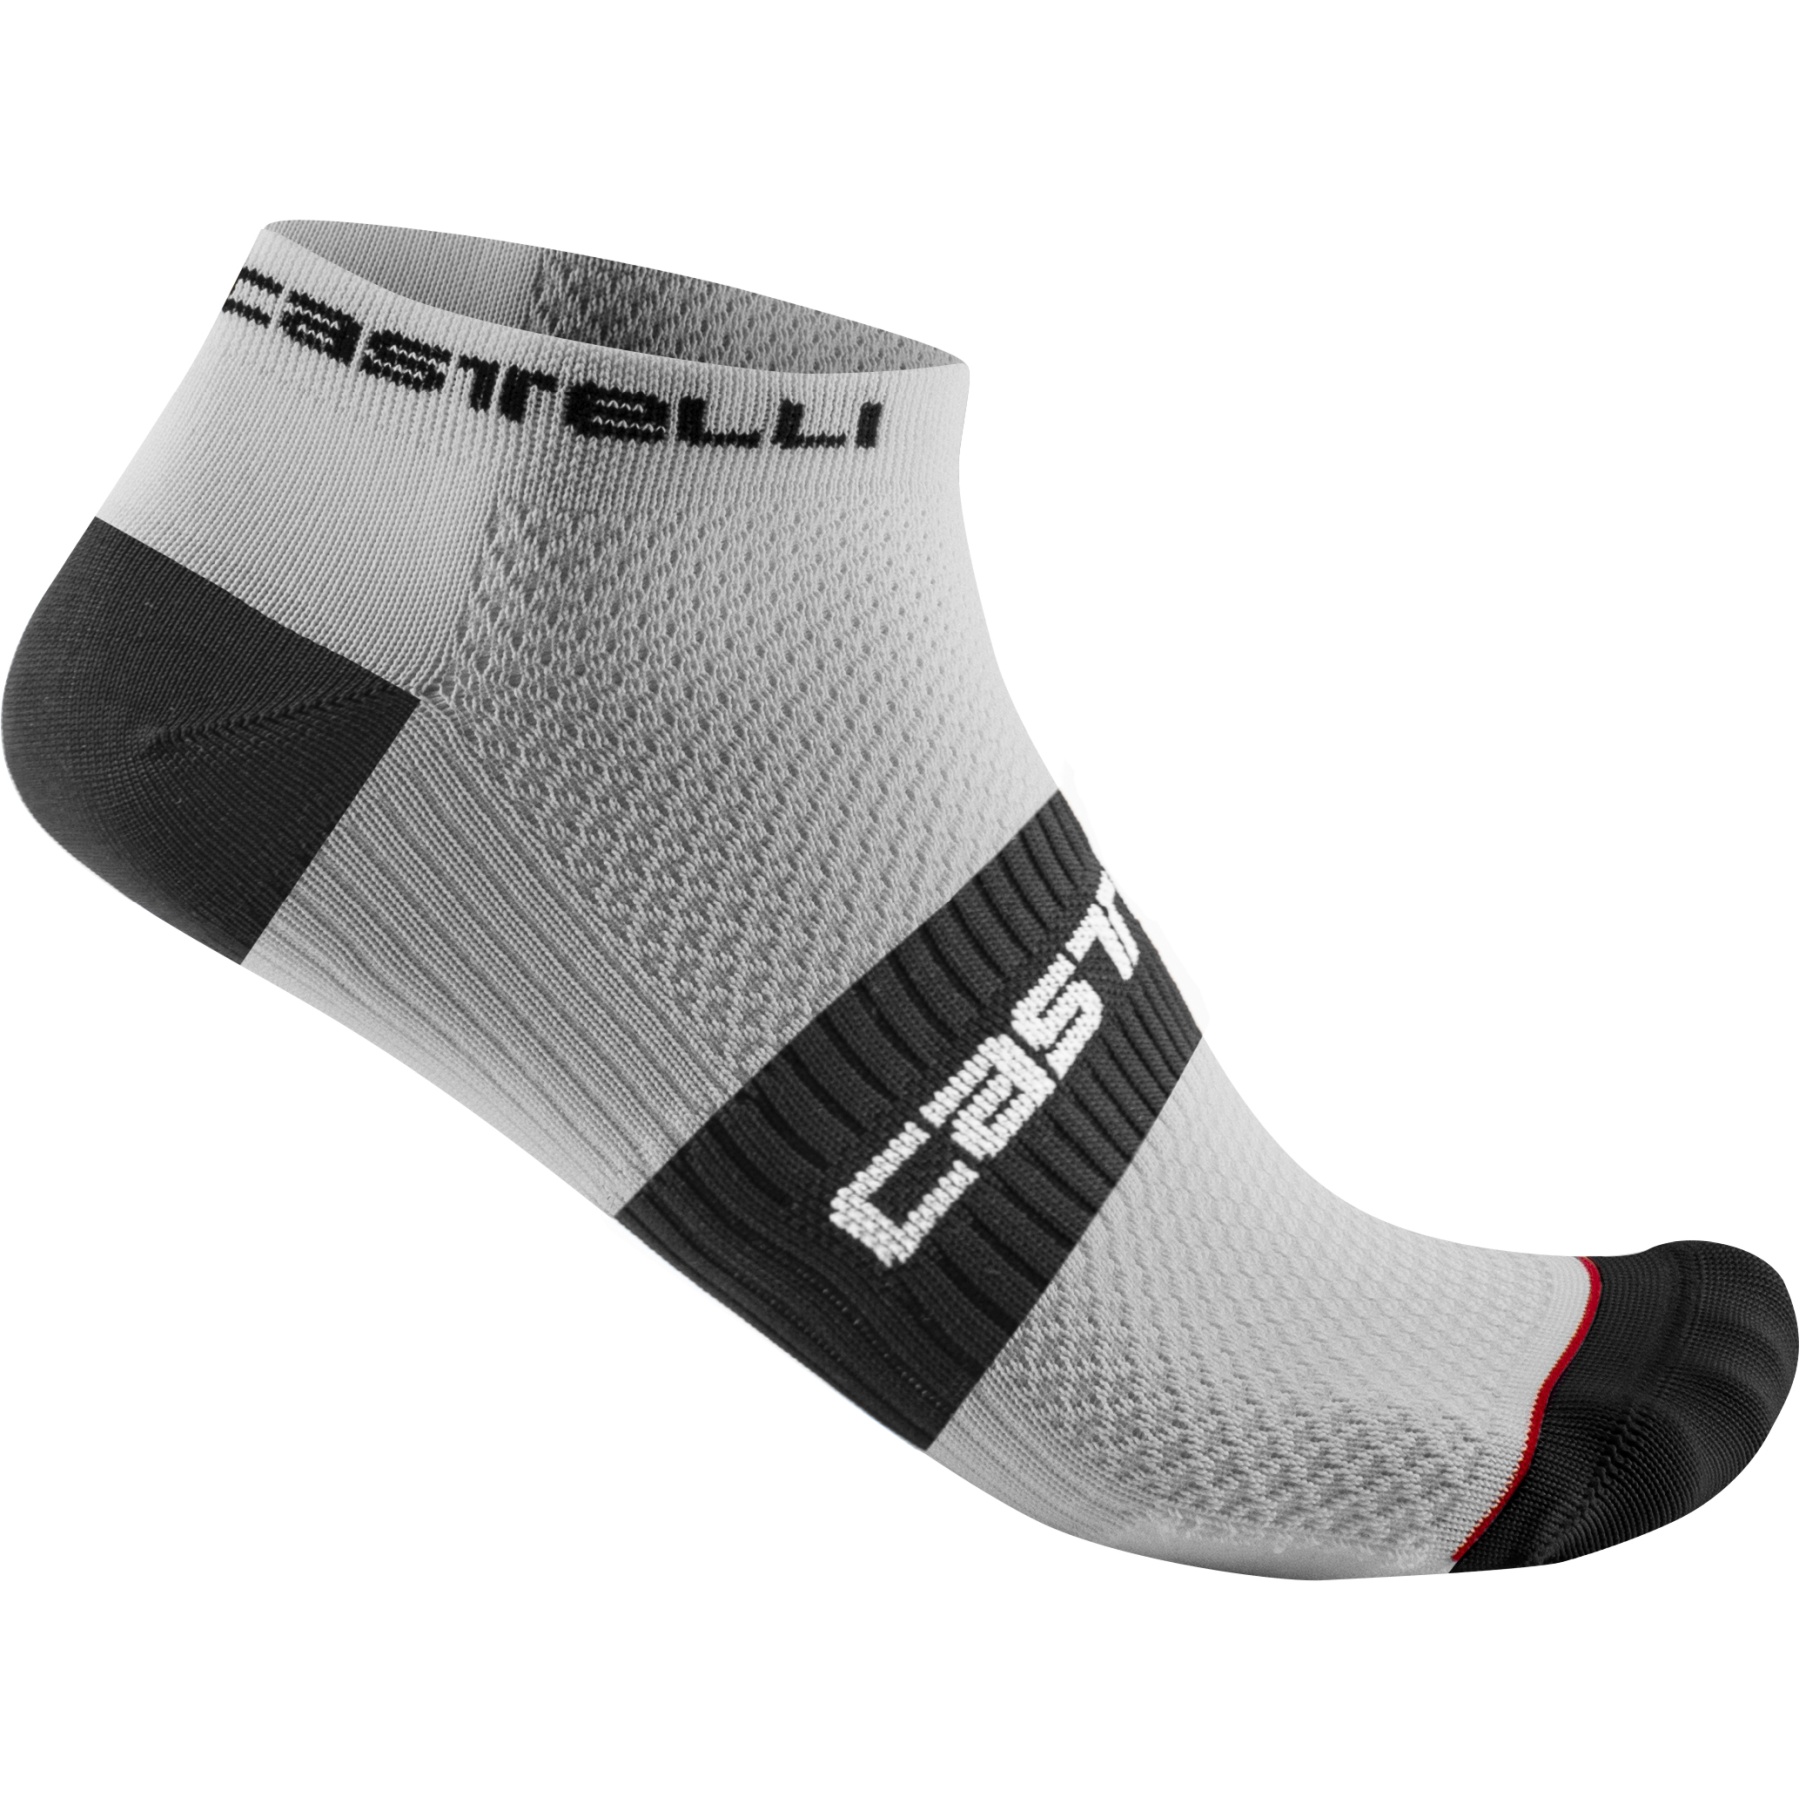 Produktbild von Castelli Lowboy 2 Socken - weiß schwarz 001